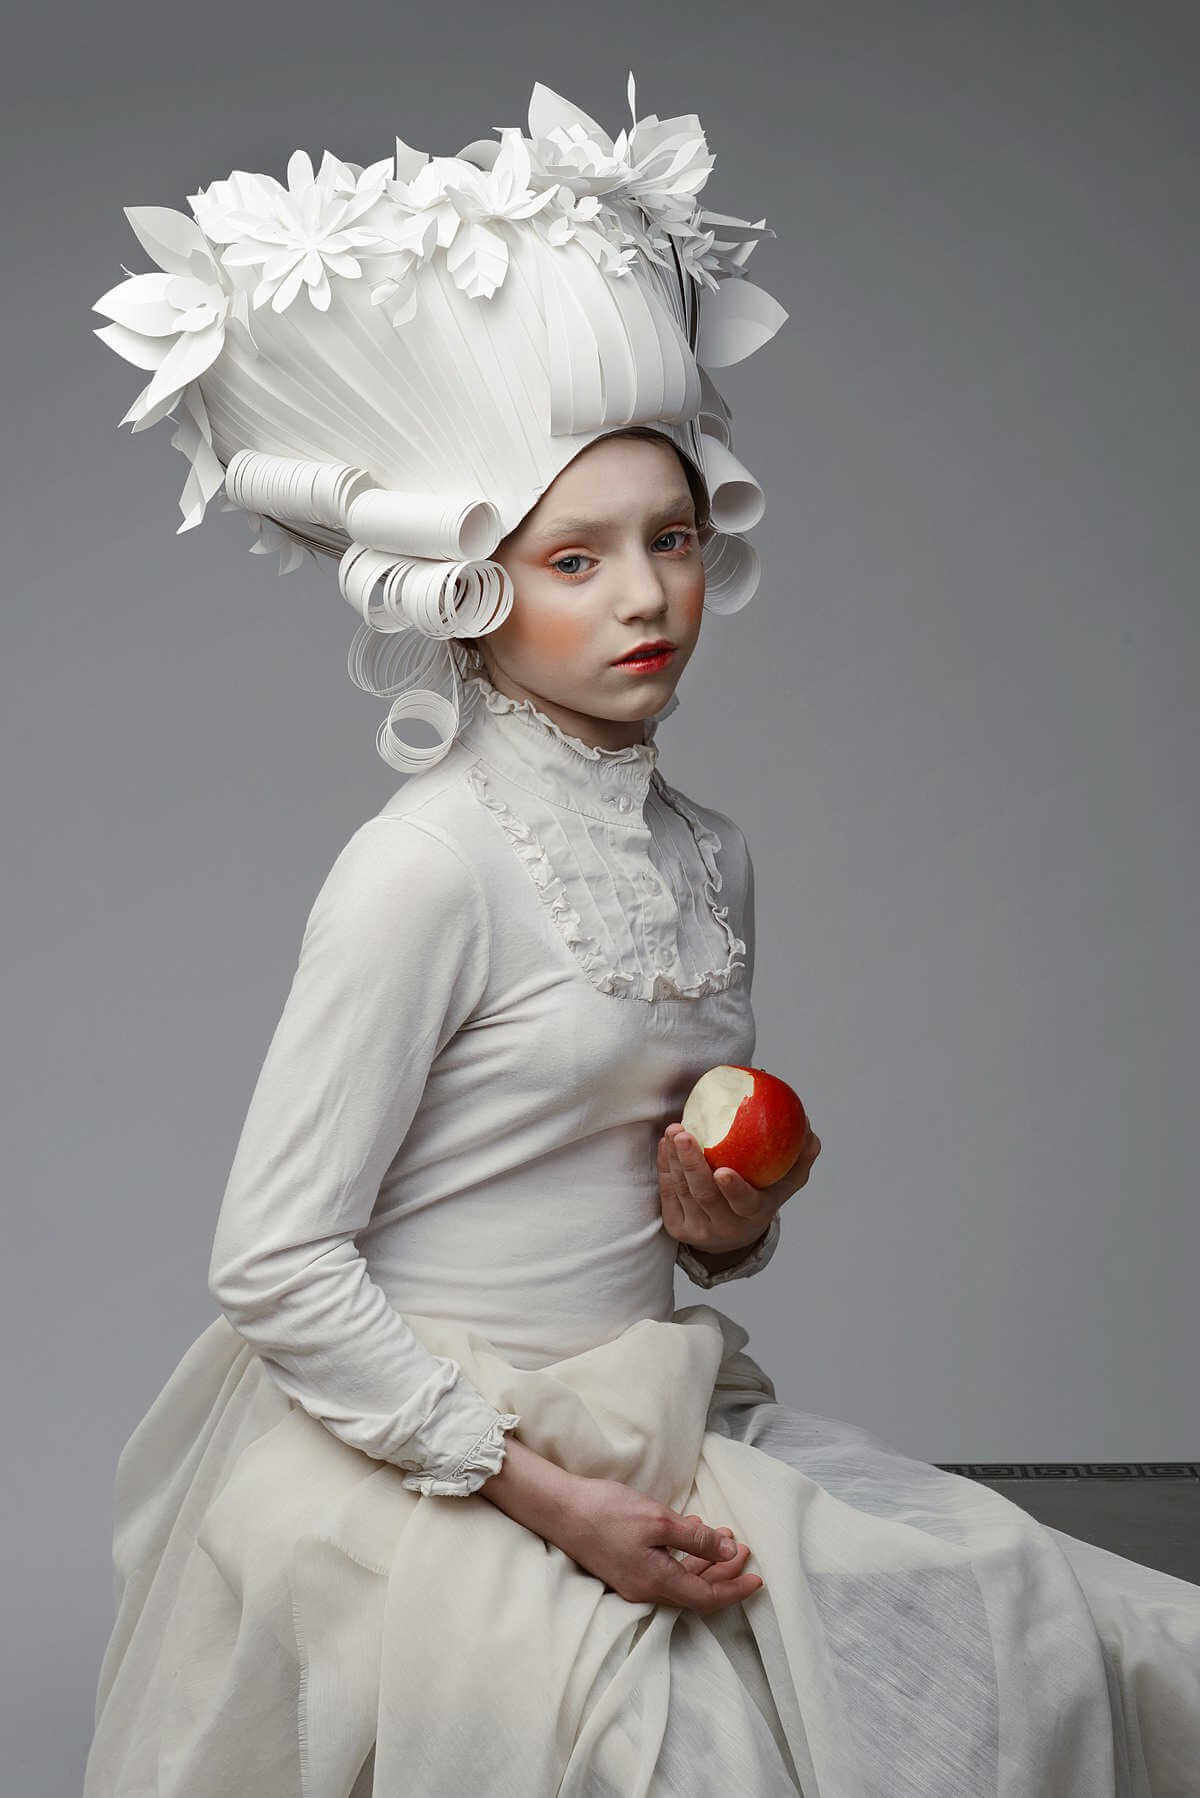 chica con peluca de hecha de papel imitando la epoca barroca